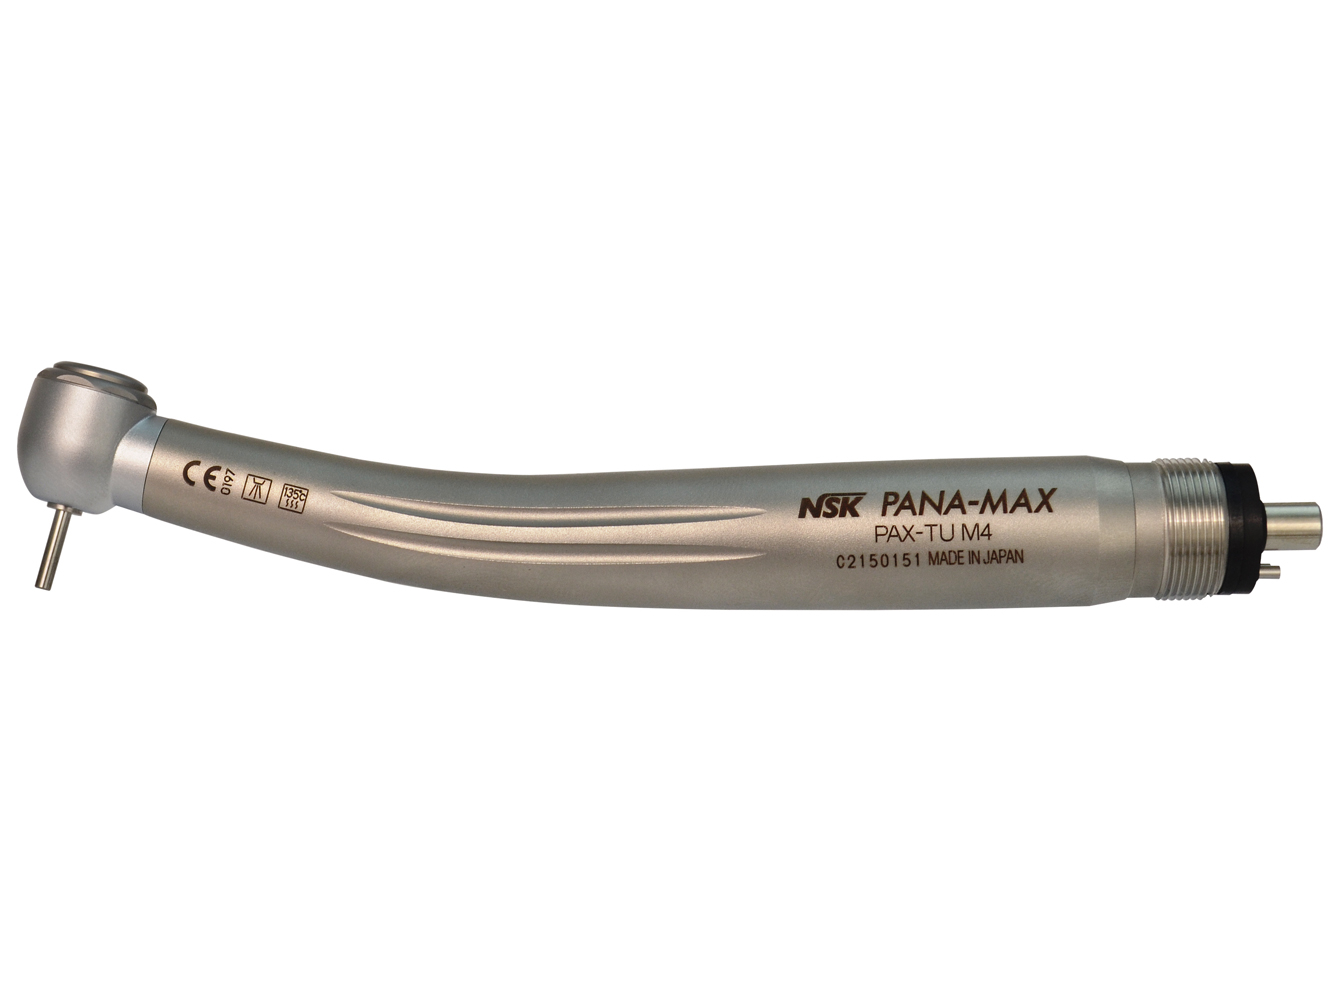 Pana-Max-TU-M4 Стоматологический турбинный наконечник c усиленной головкой, с системой очистки головки, NSK (Япония)